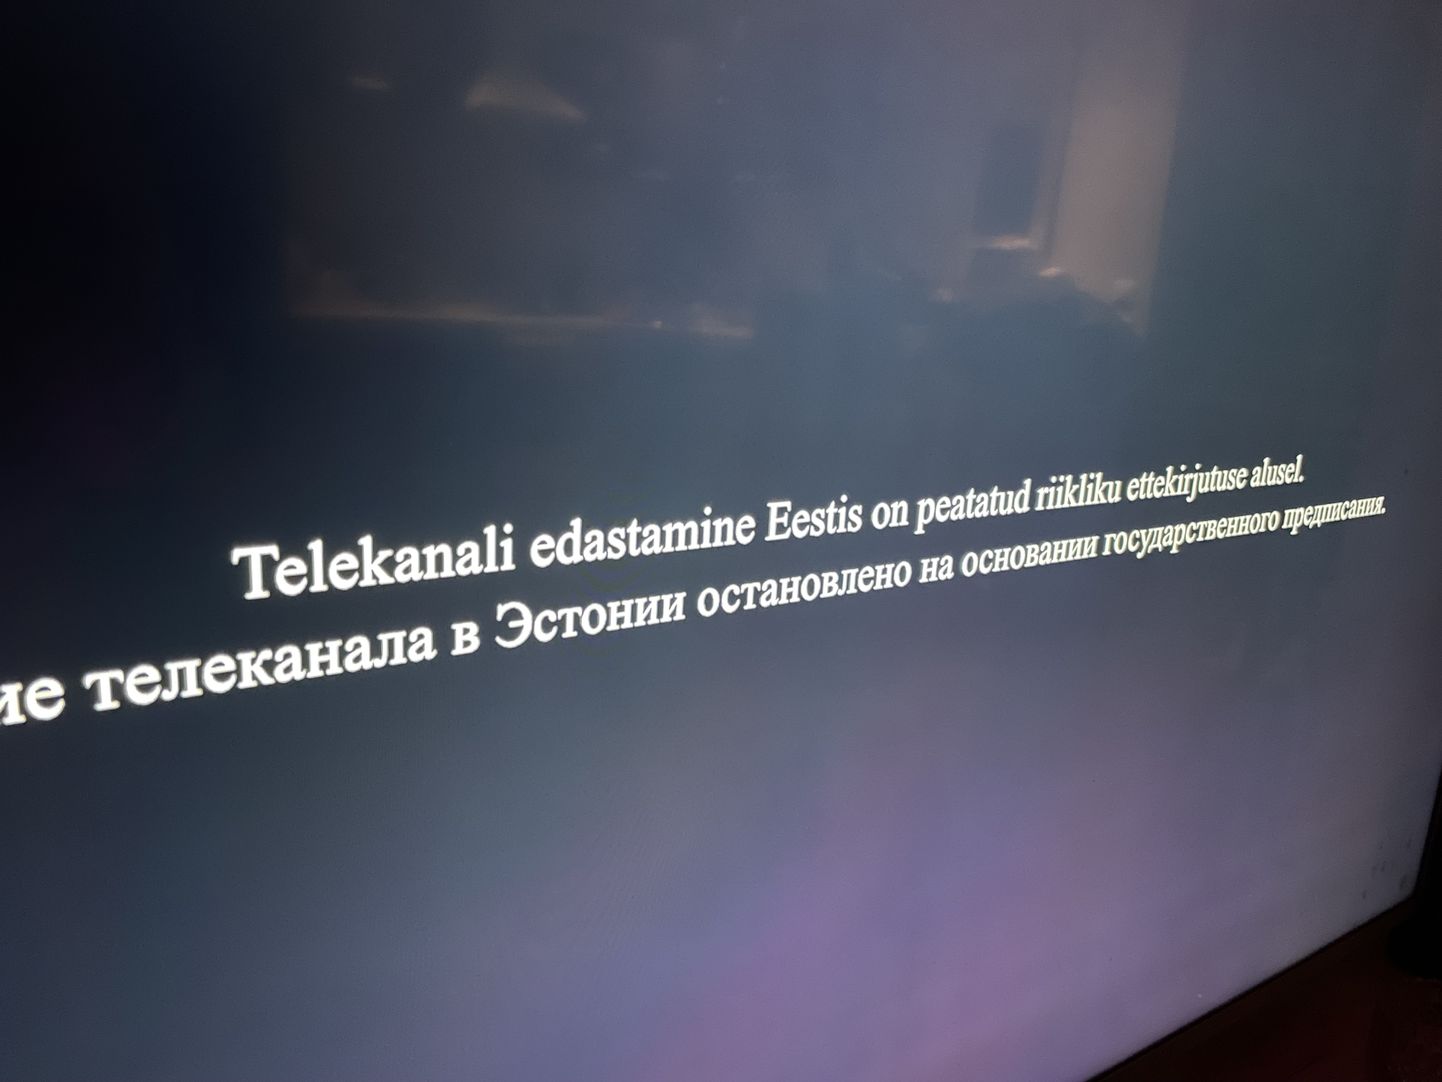 Eestis võeti mitu venekeelset telekanalit eetrist maha.